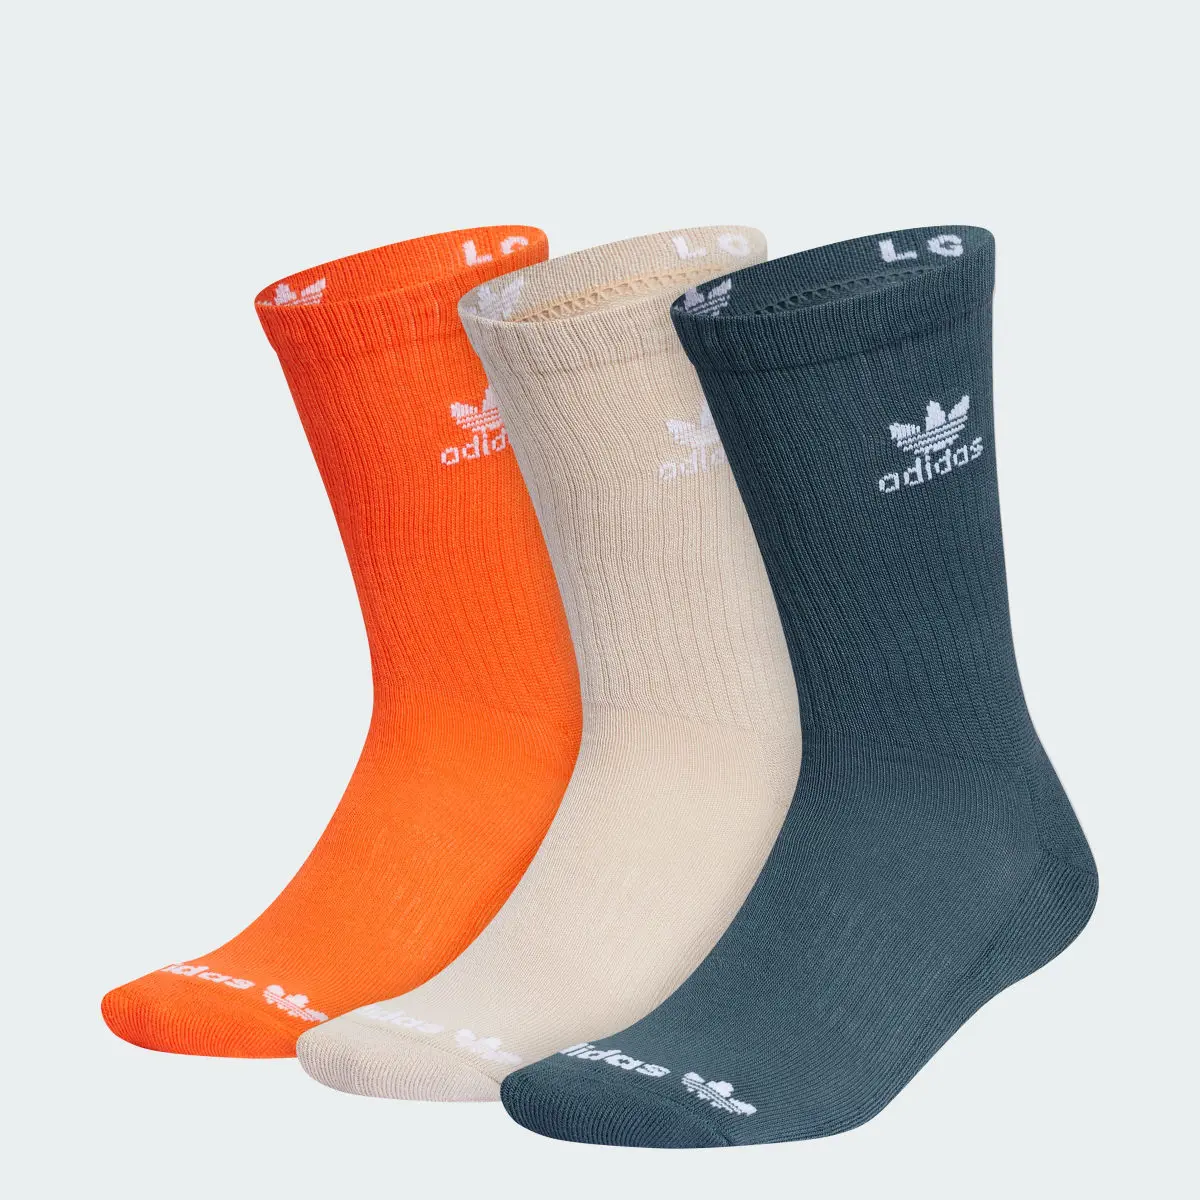 Adidas Trefoil Crew Socks 3 Pairs. 1